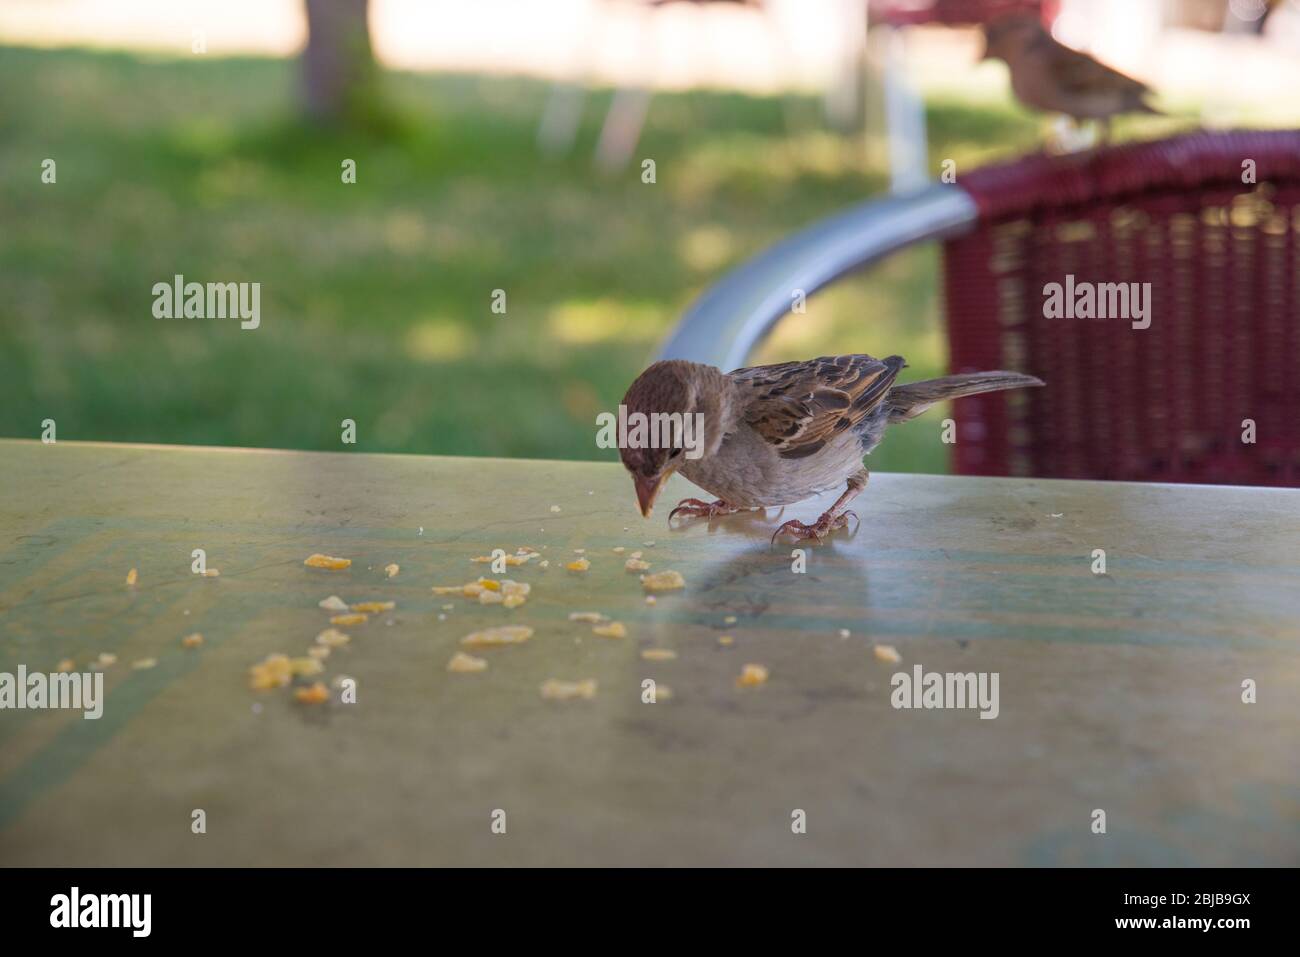 Nourrissant les oiseaux : manger des crumbles sur la table d'une terrasse. Banque D'Images